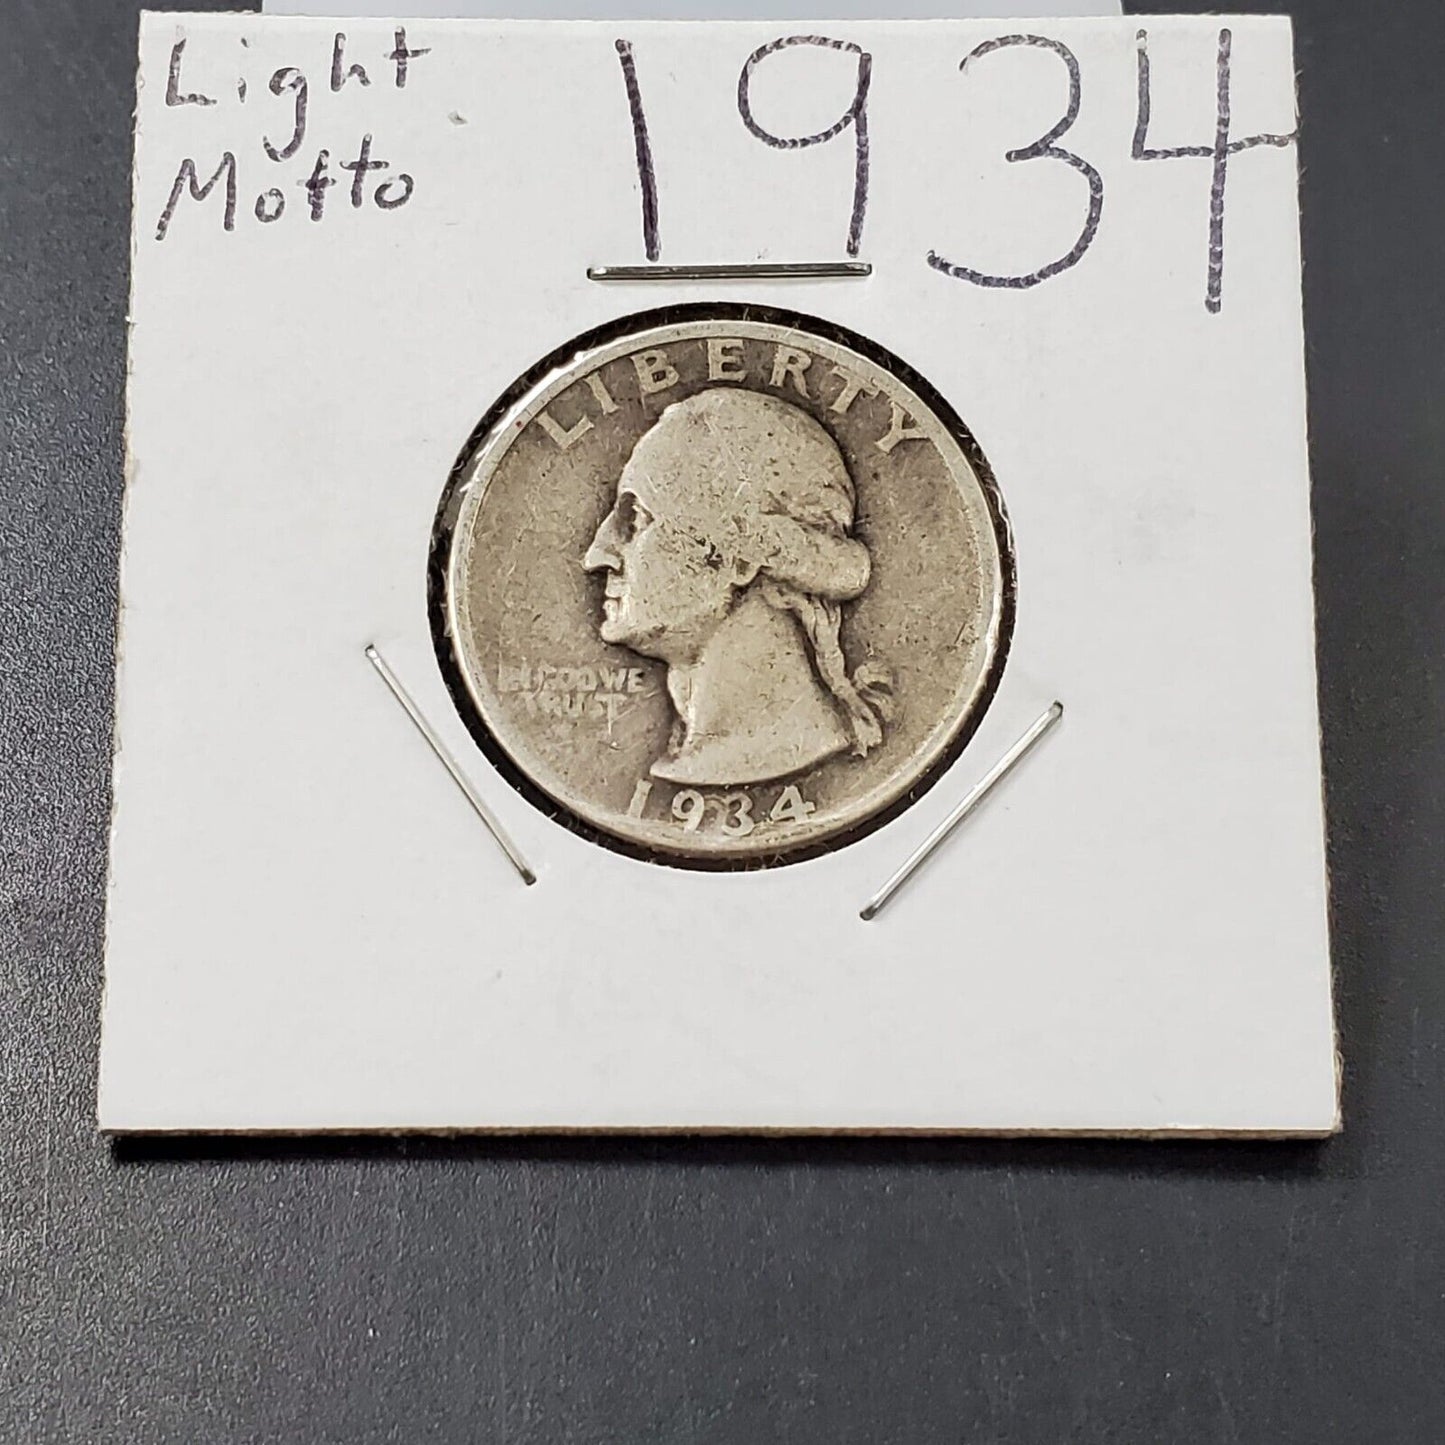 1934 P Washington Silver Quarter Coin Light Motto Variety